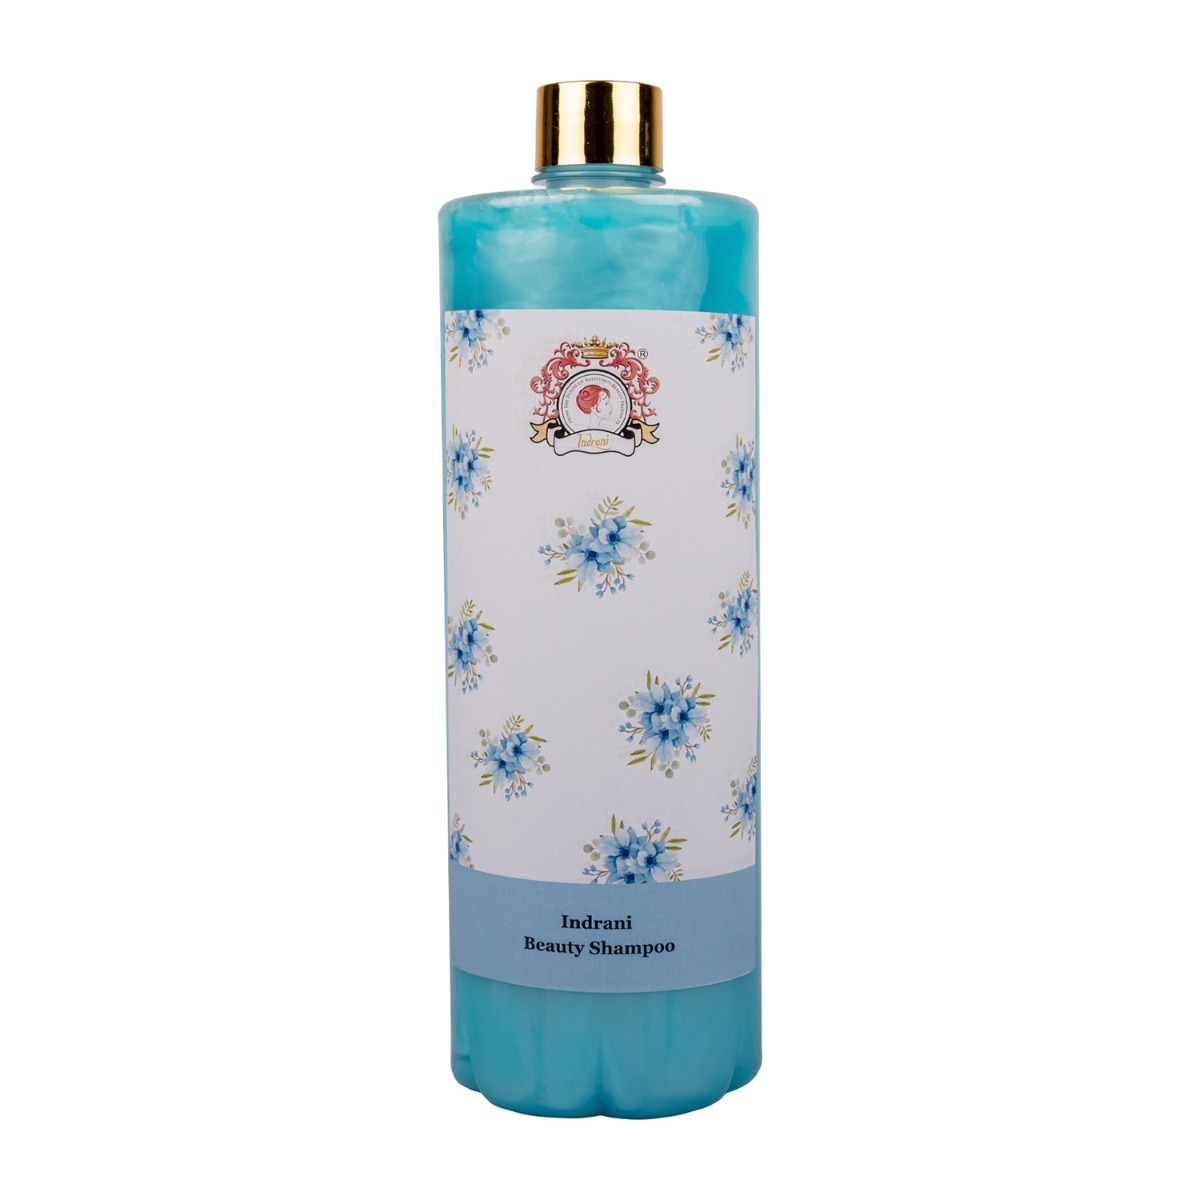 Indrani Beauty Shampoo, 1ltr